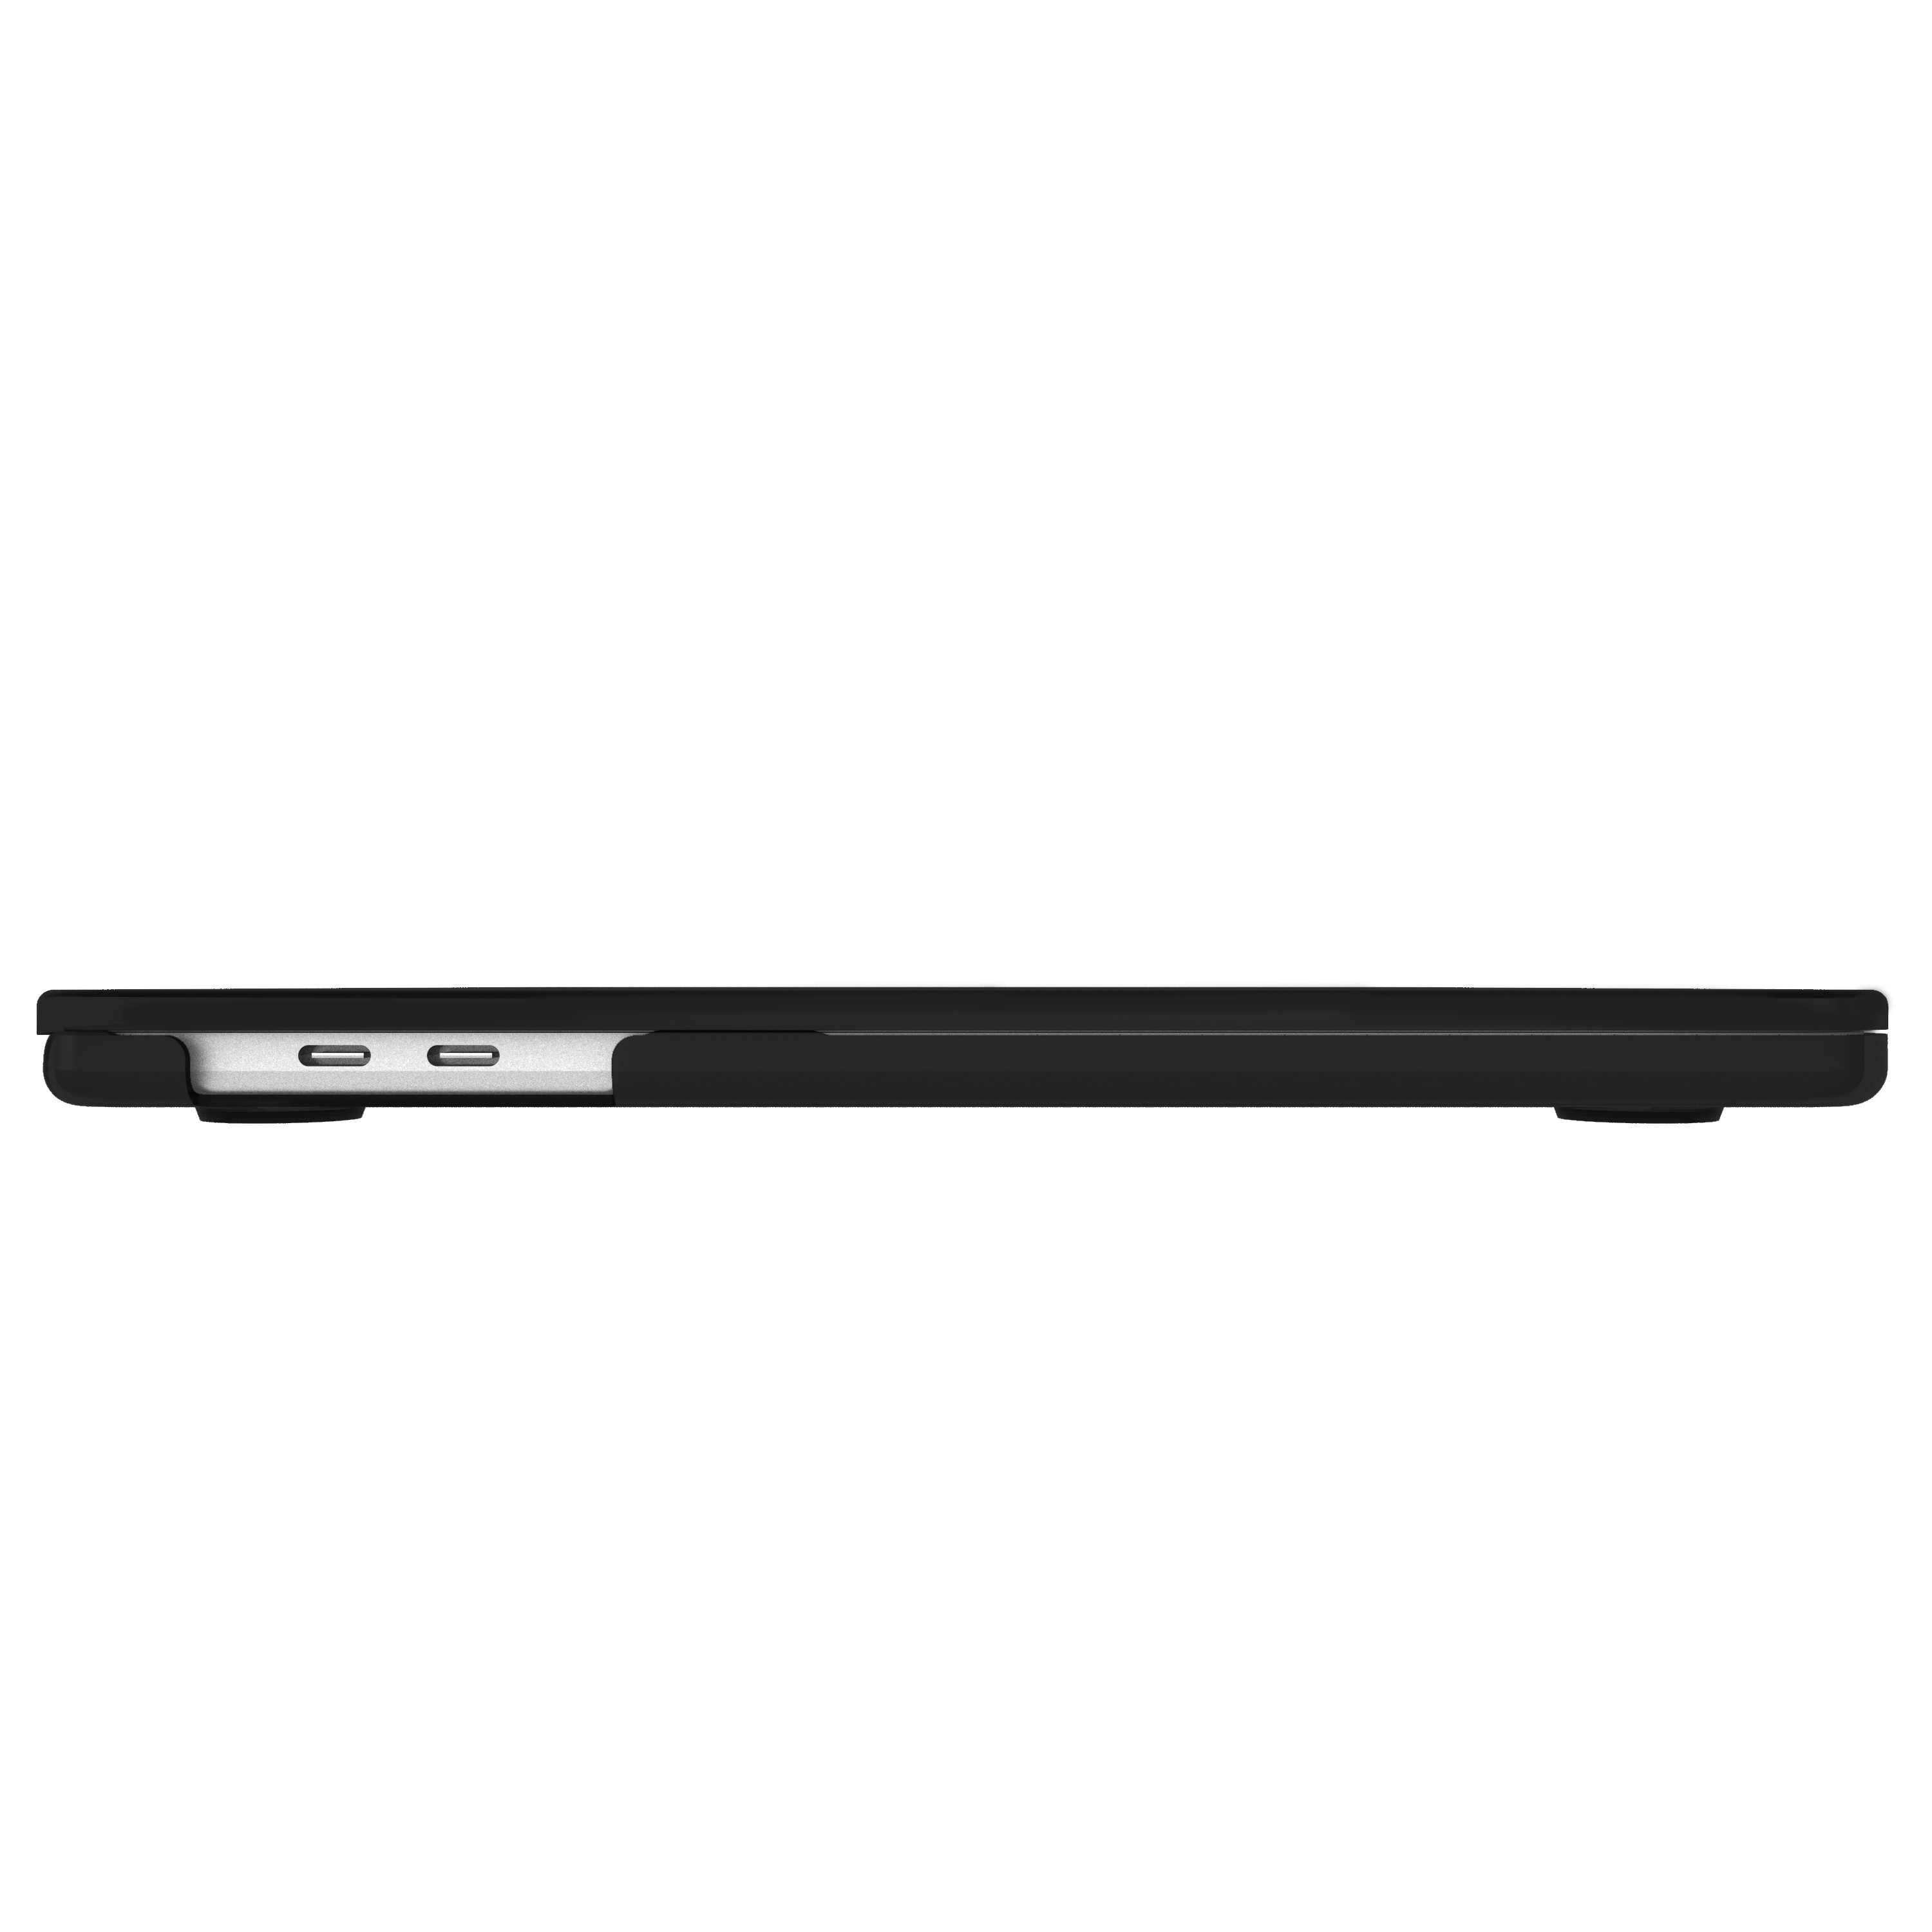 Bumper Snap-On Apple Kunststoff, Grau/Transparent für Laptophülle CASE-MATE